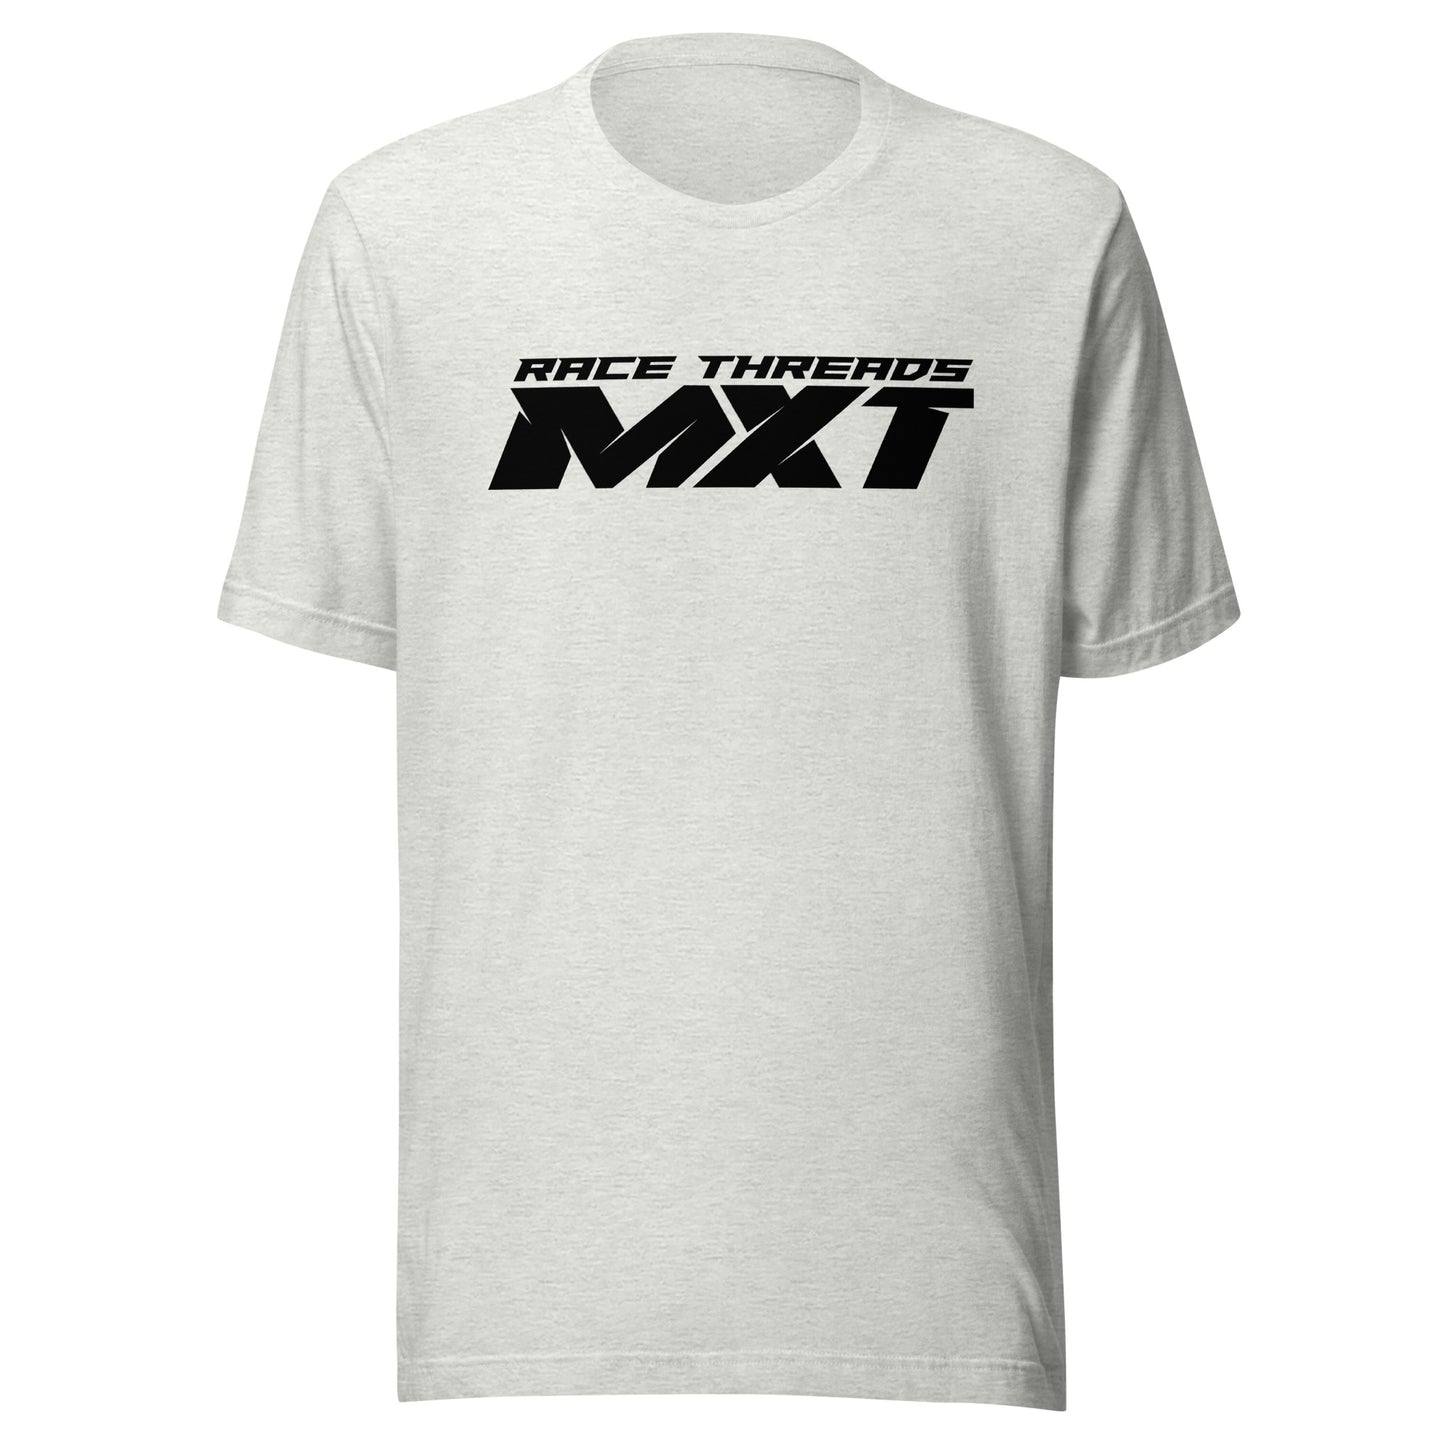 Race Threads MXT Unisex T-Shirt